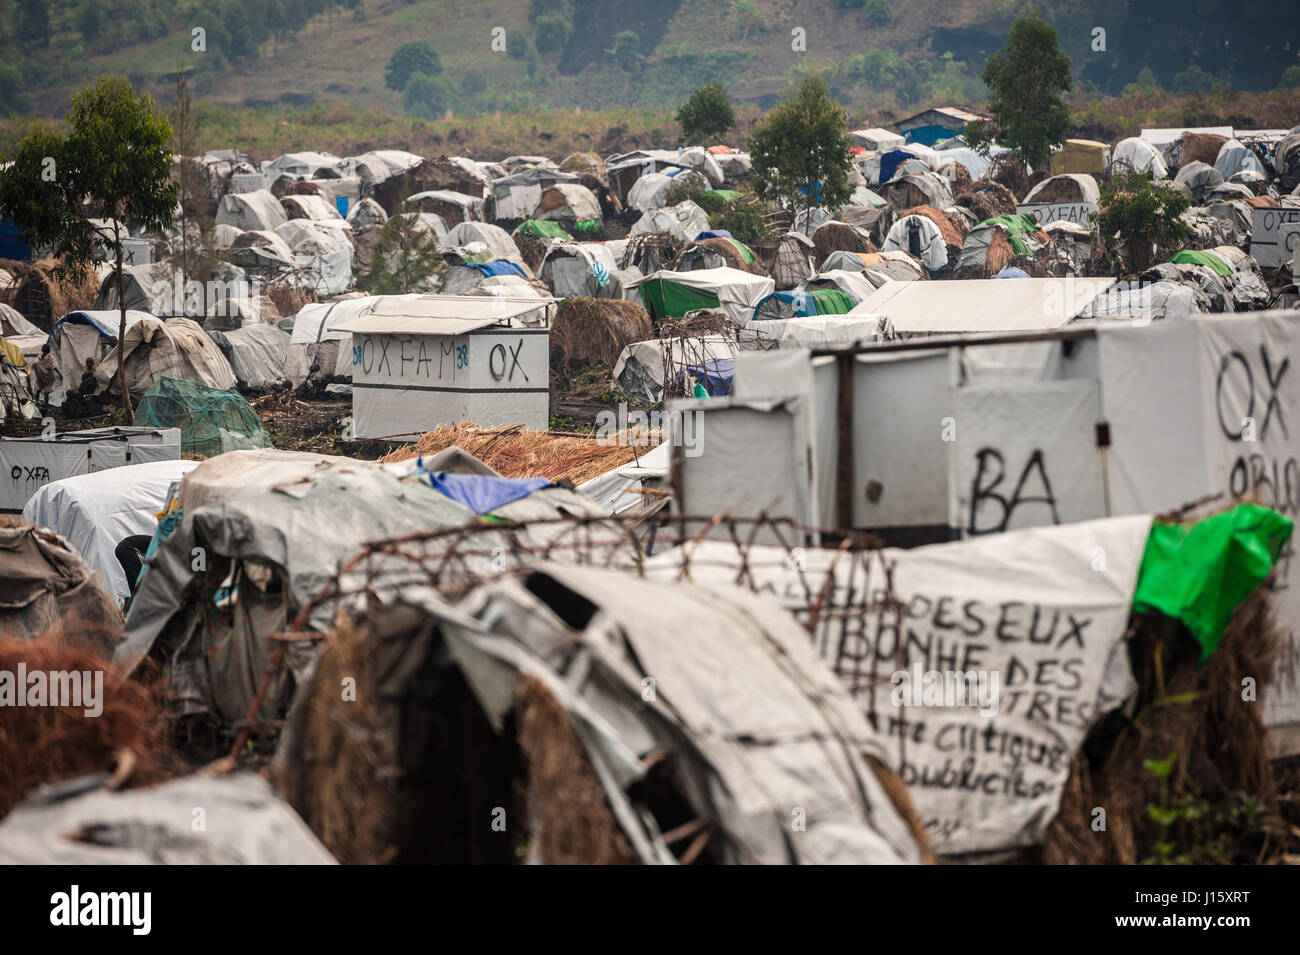 Un campamento para personas desplazadas internamente (PDI), cerca de Goma, en la región oriental de la República Democrática del Congo Foto de stock